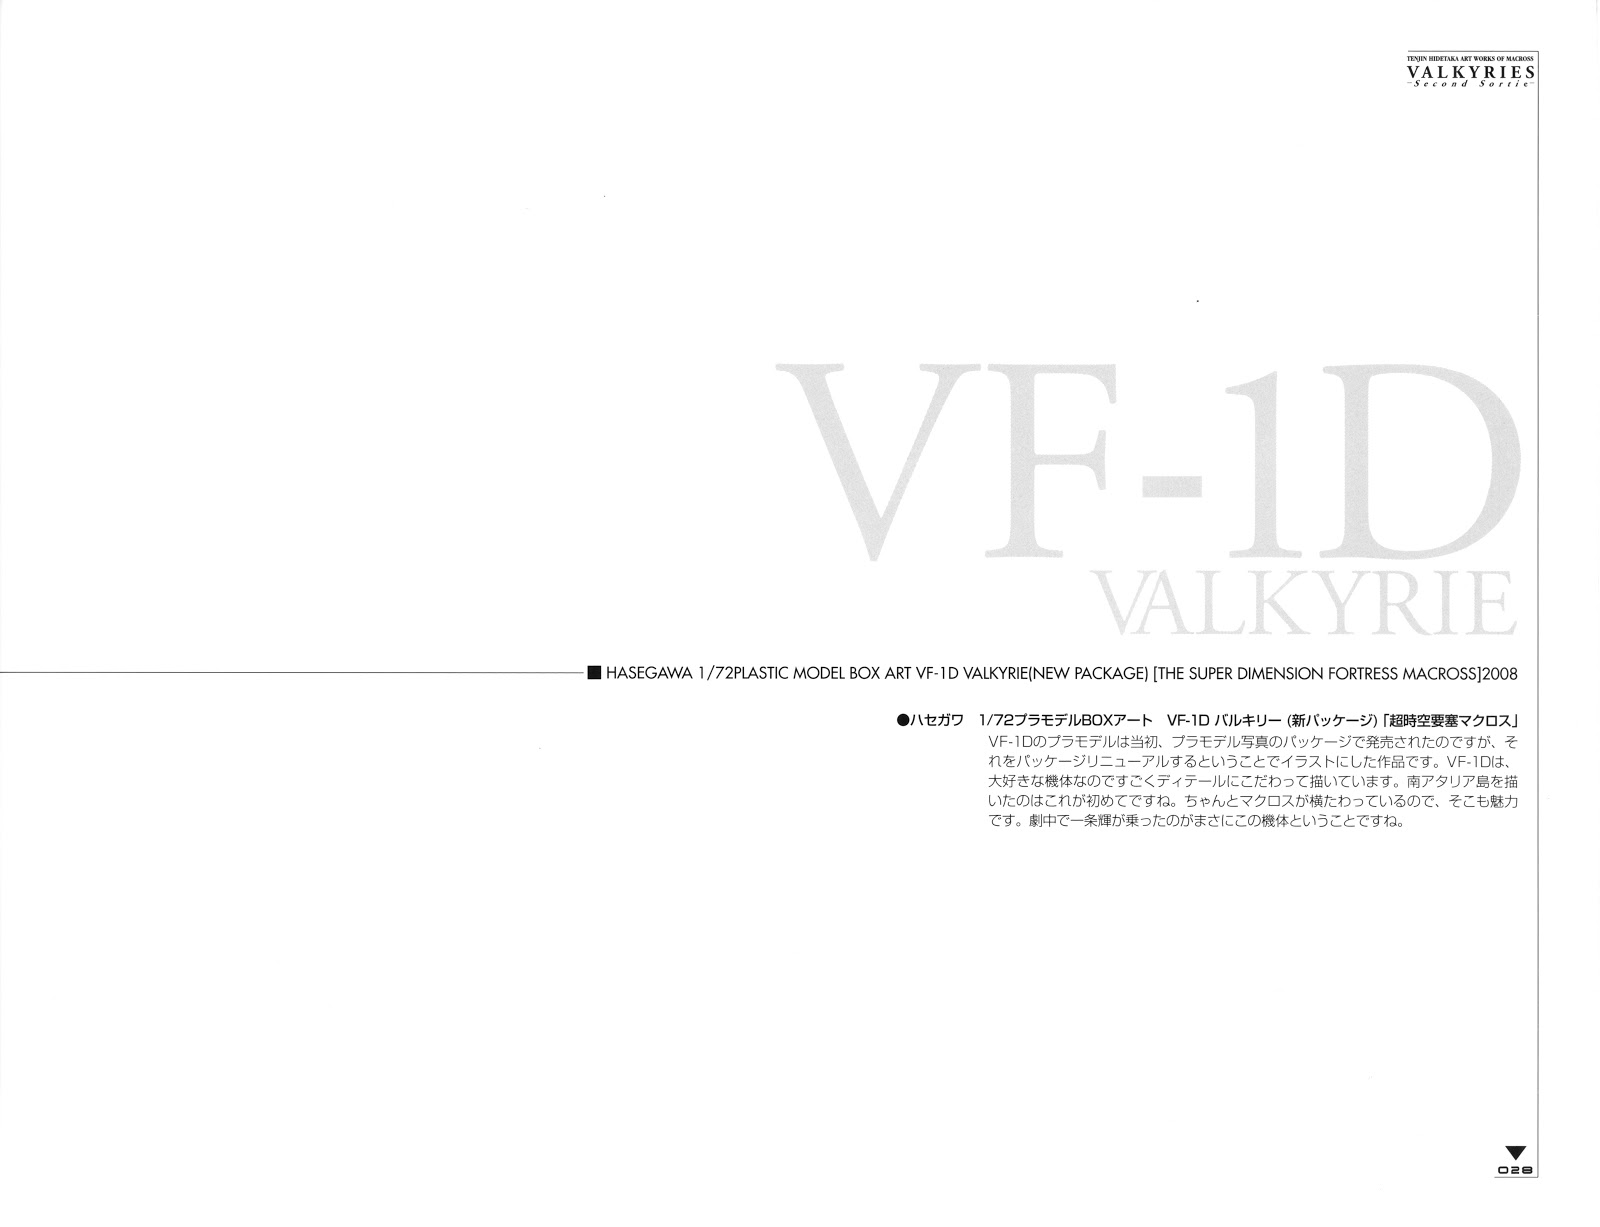 Valkyries Second Sortie - Art Works of Macross - Tenjin Hidetaka